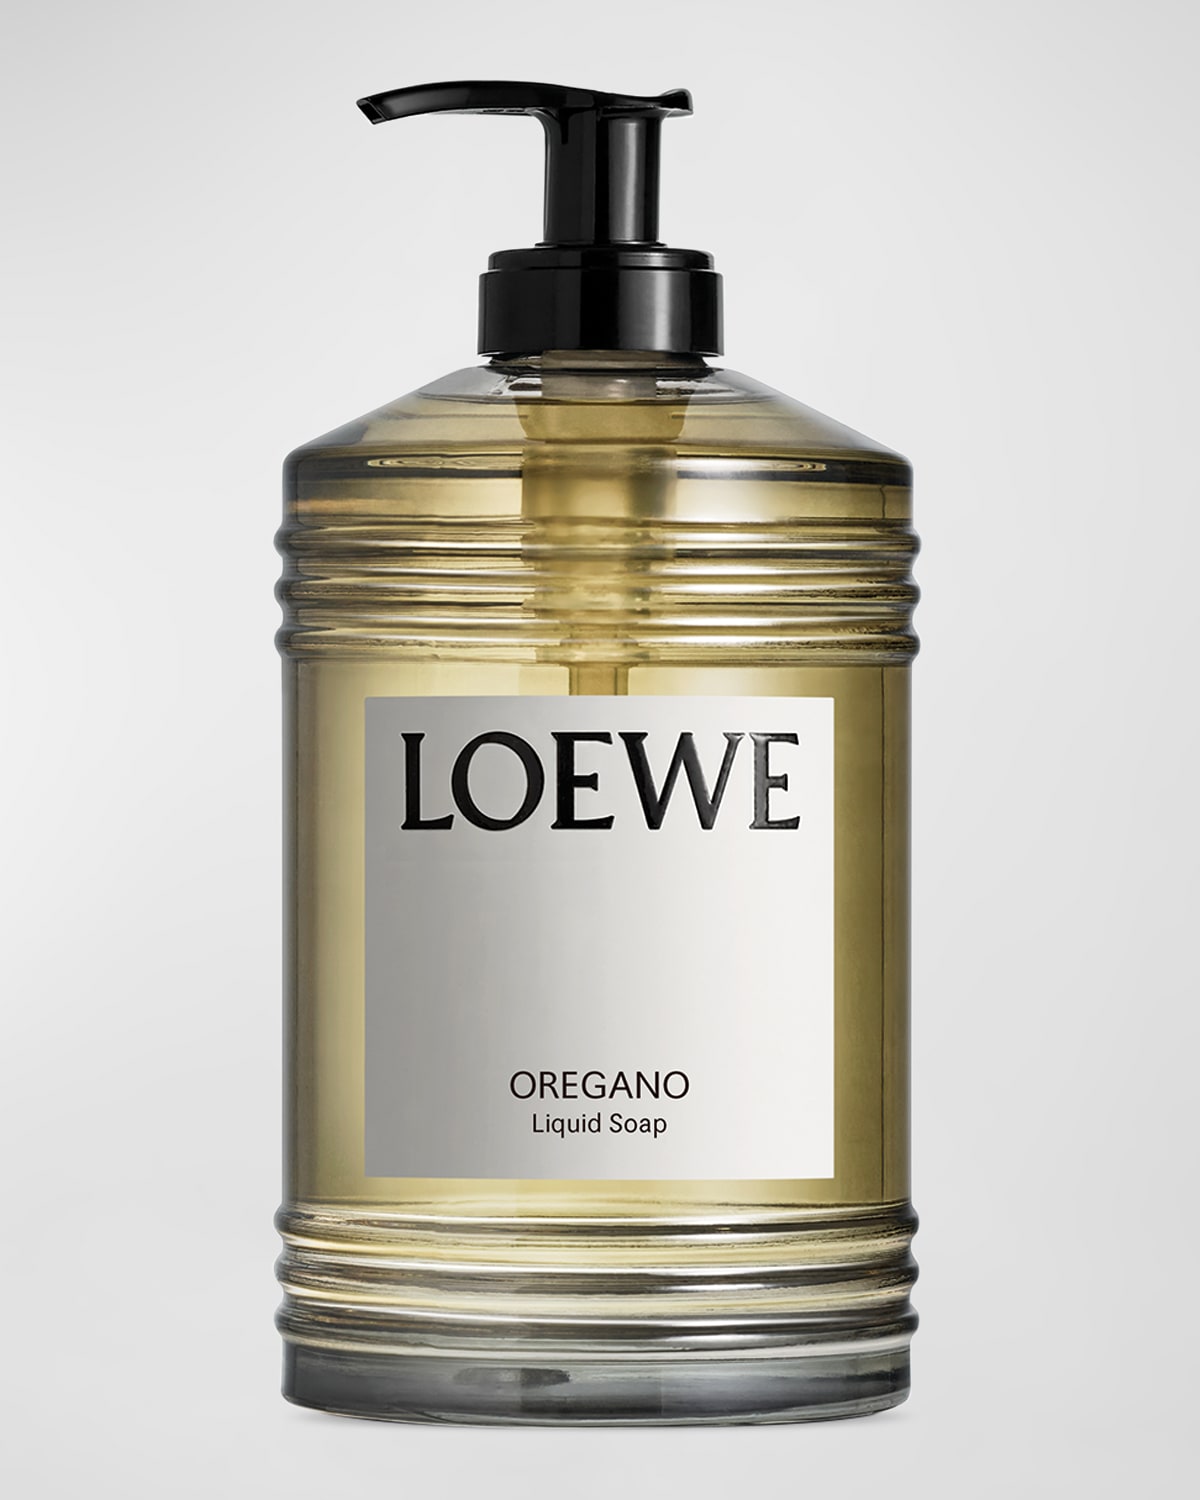 Loewe Oregano Liquid Soap, 12 Oz. In White